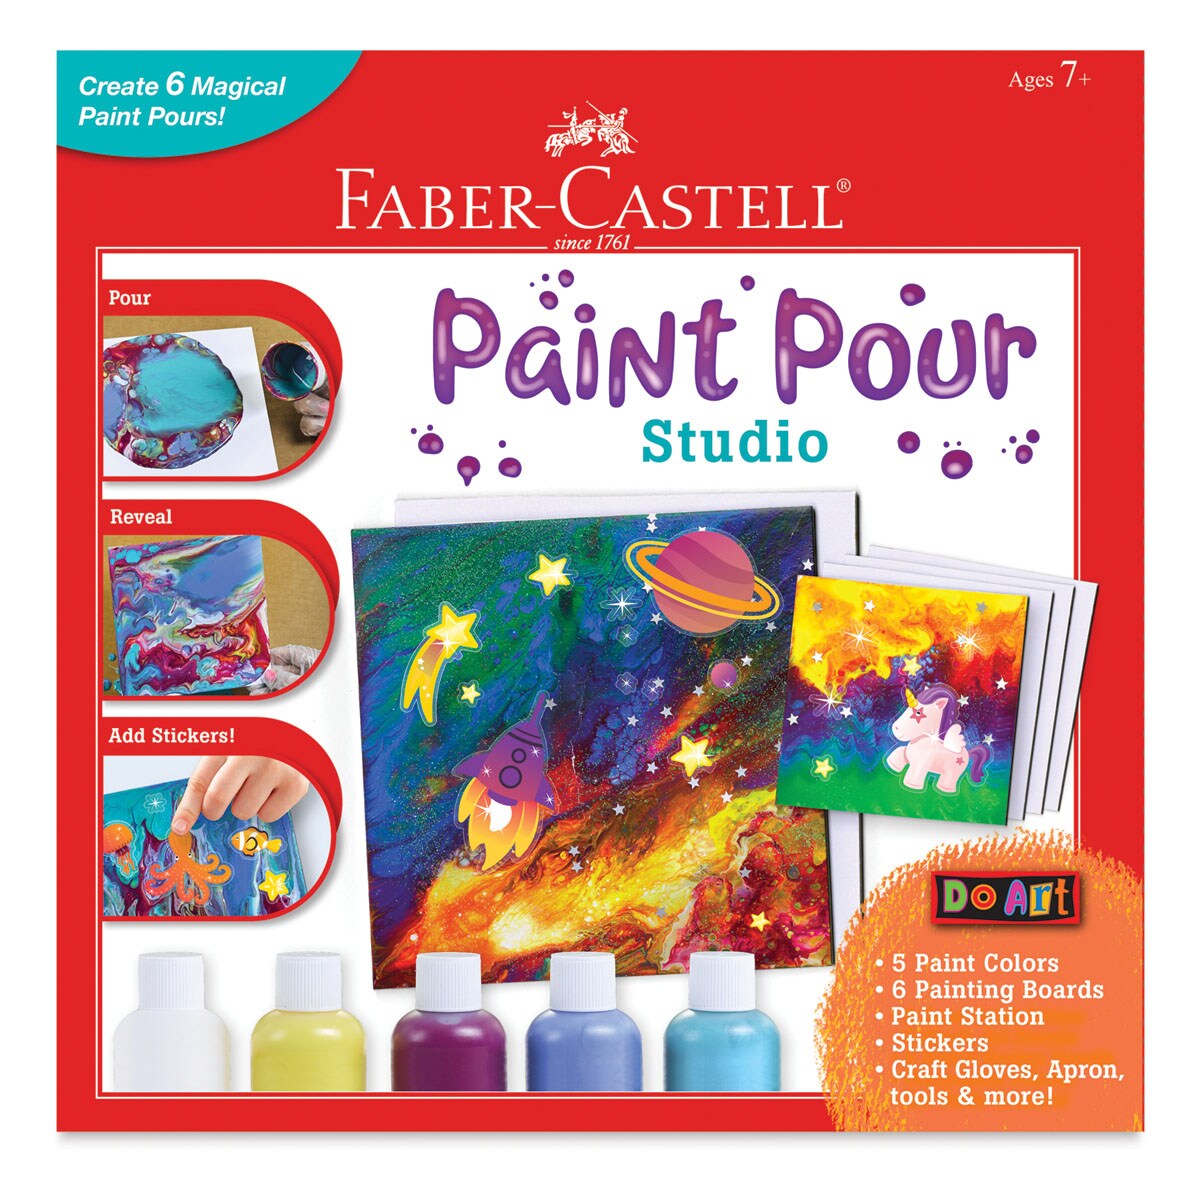 Faber-Castell Do Art Paint Pour Studio Kit